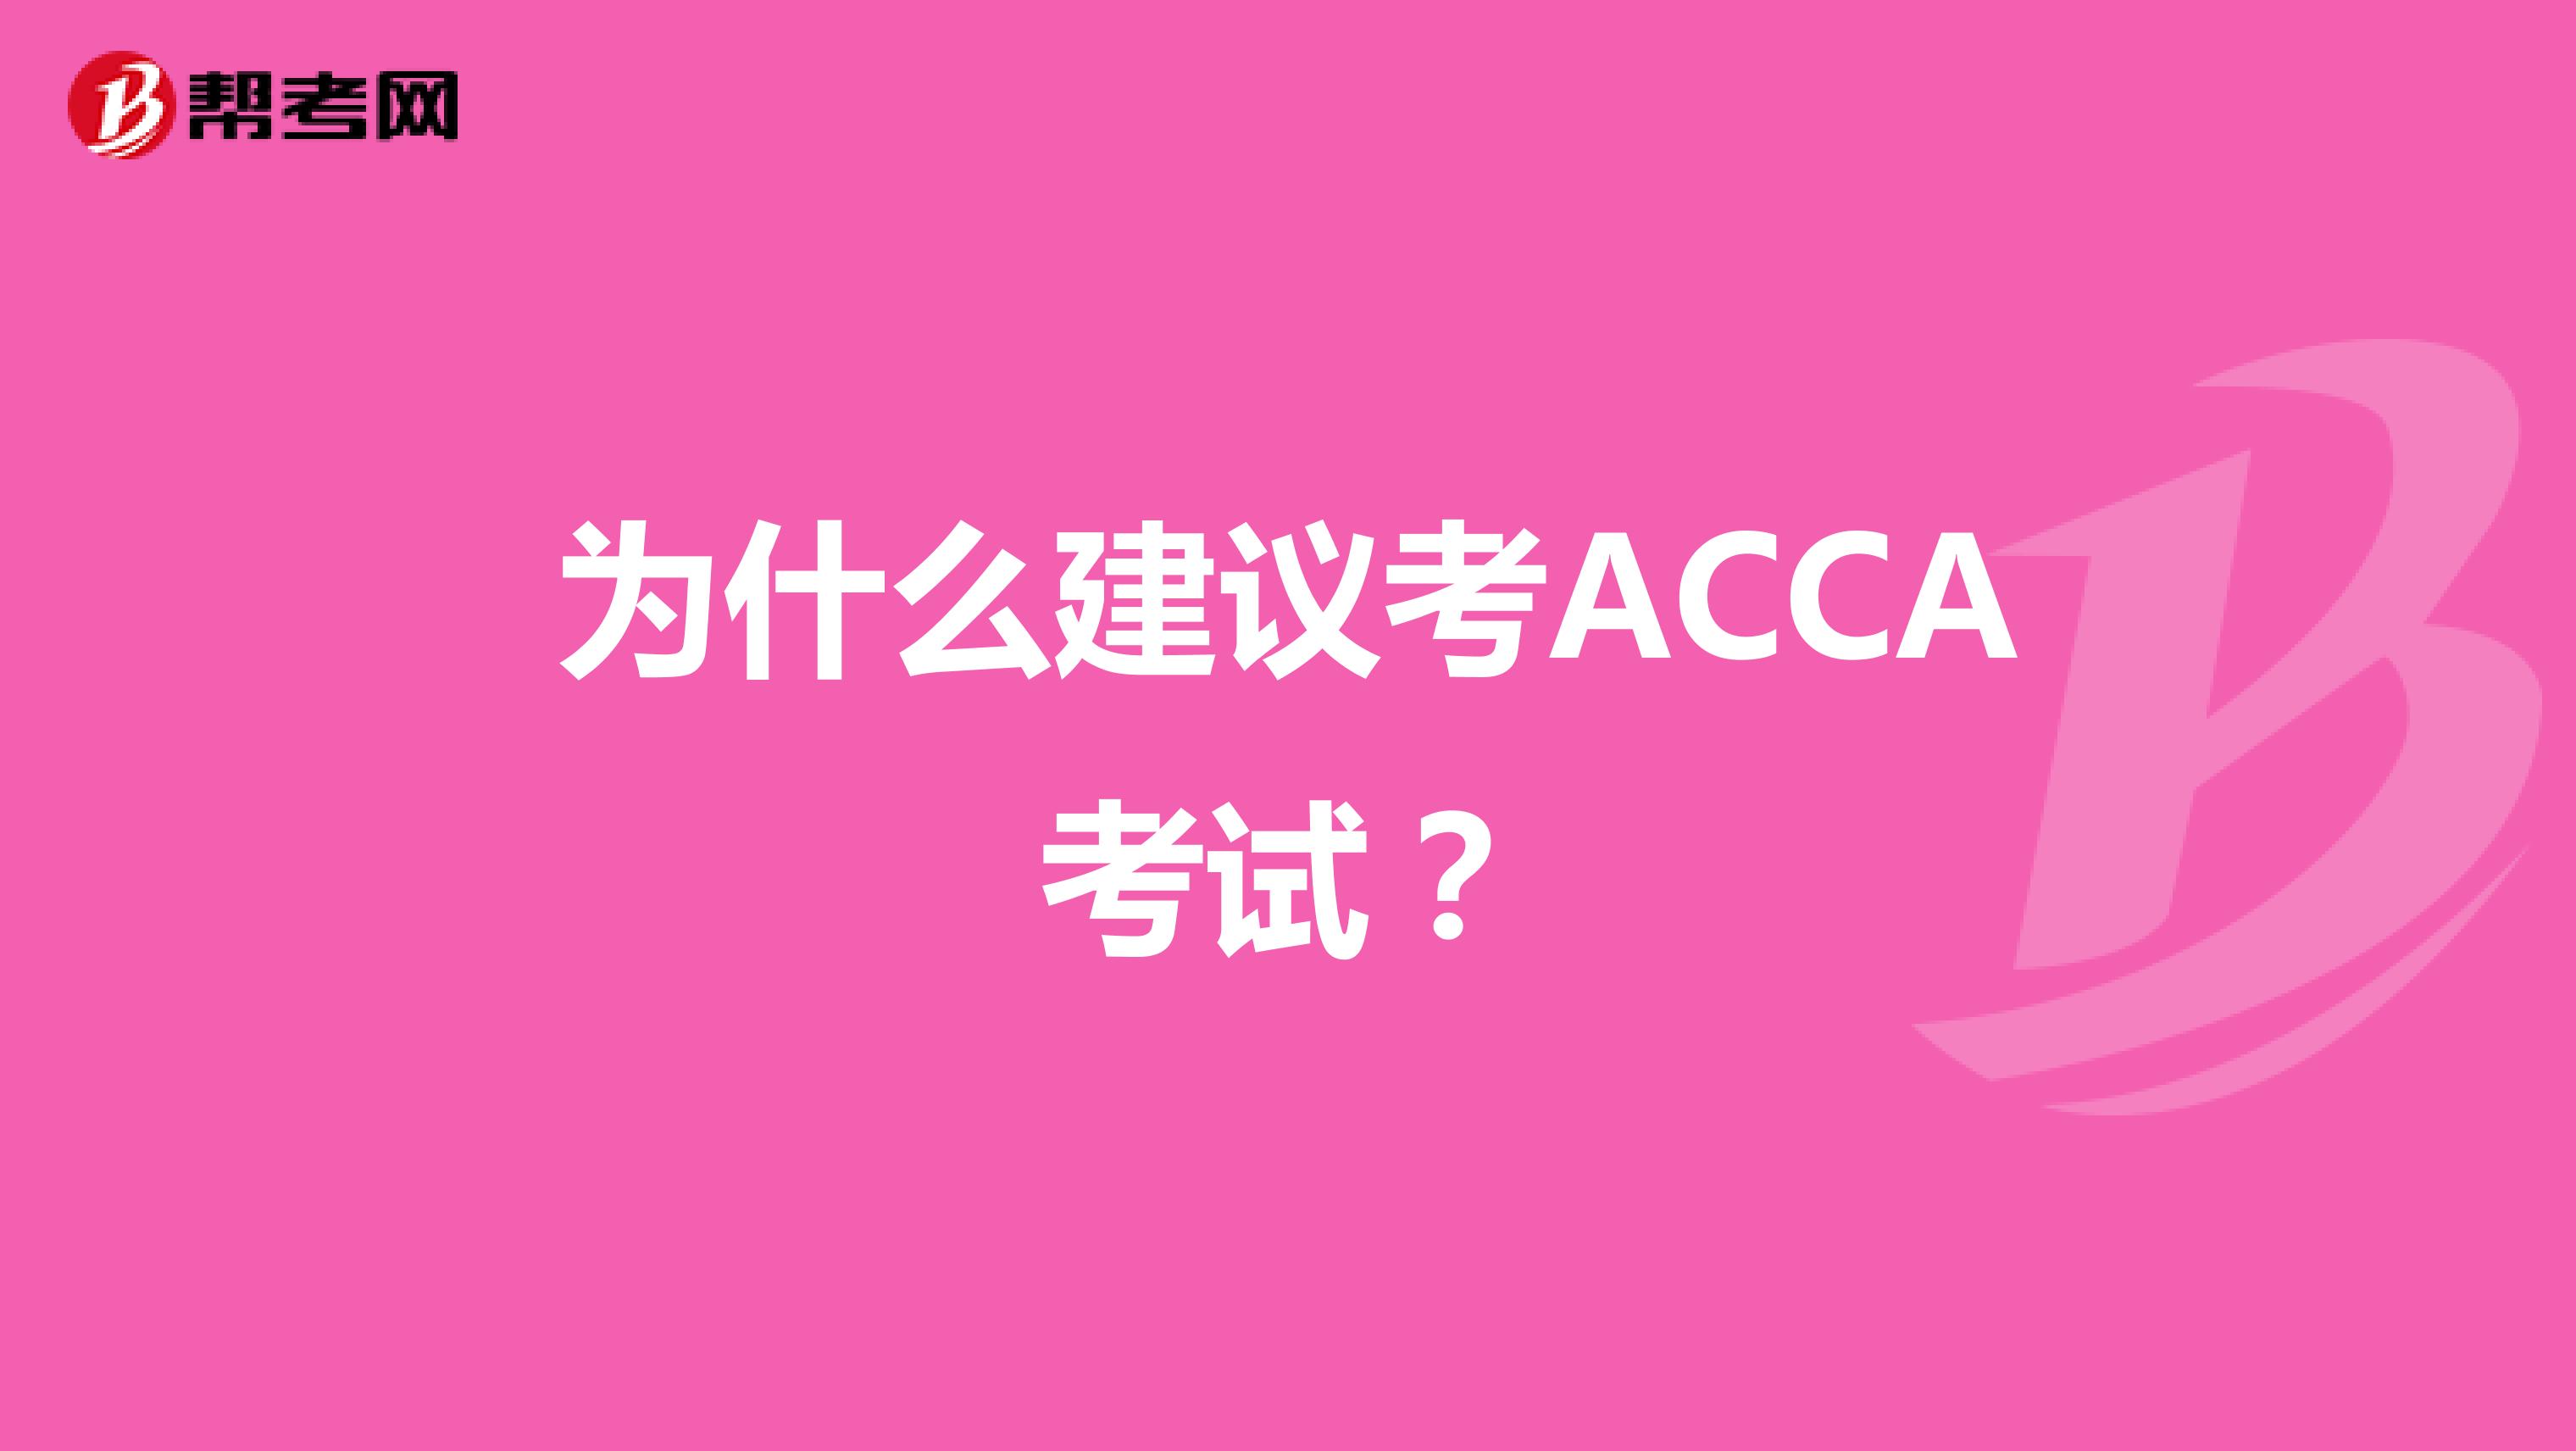 为什么建议考ACCA考试？